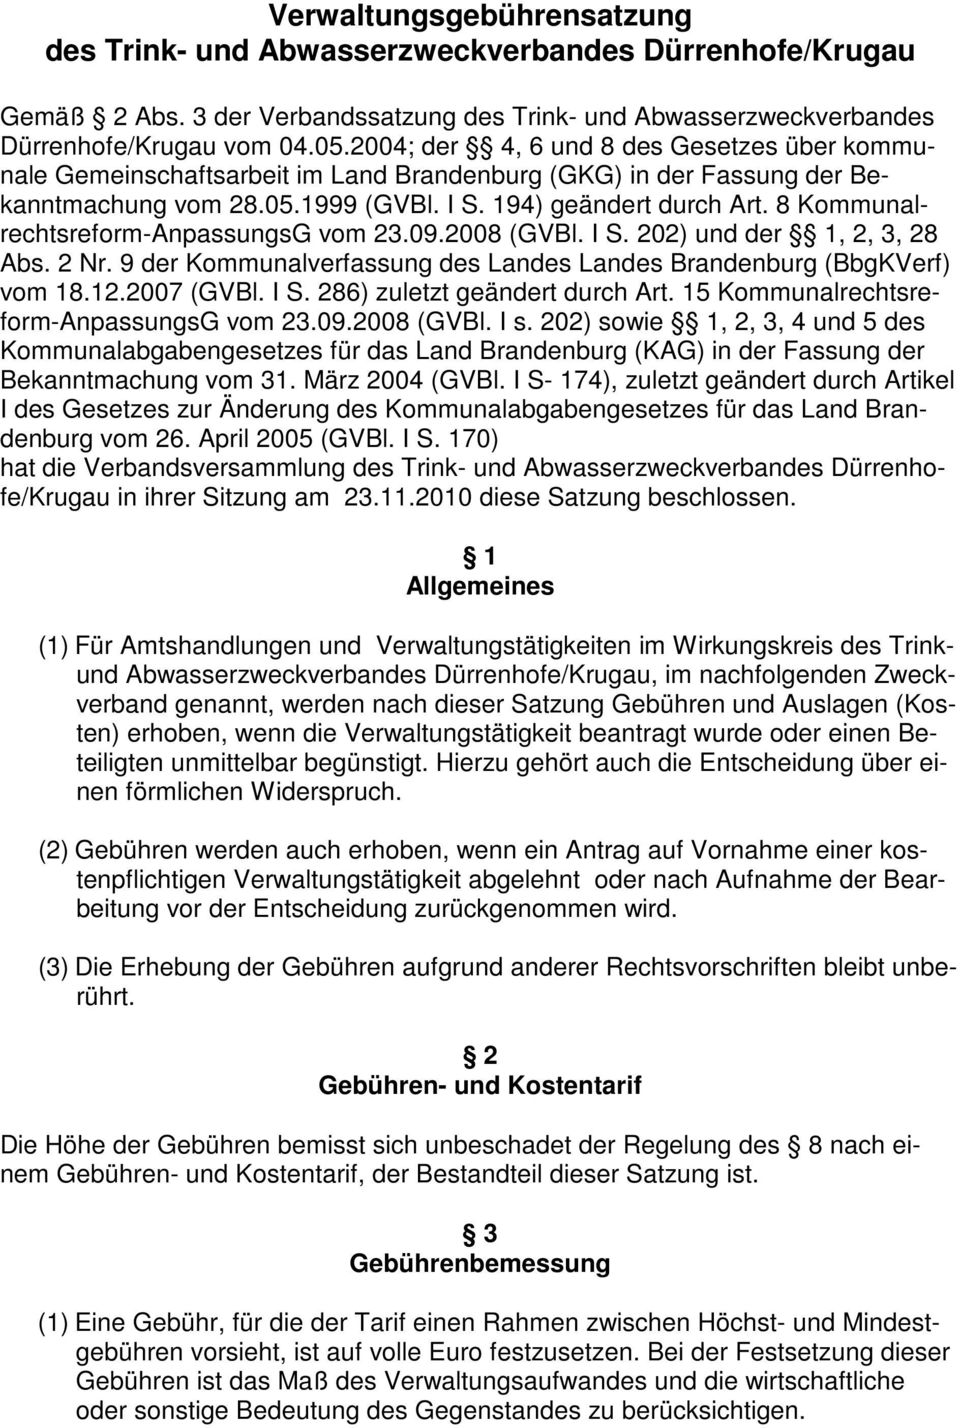 8 Kommunalrechtsreform-AnpassungsG vom 23.09.2008 (GVBl. I S. 202) und der 1, 2, 3, 28 Abs. 2 Nr. 9 der Kommunalverfassung des Landes Landes Brandenburg (BbgKVerf) vom 18.12.2007 (GVBl. I S. 286) zuletzt geändert durch Art.